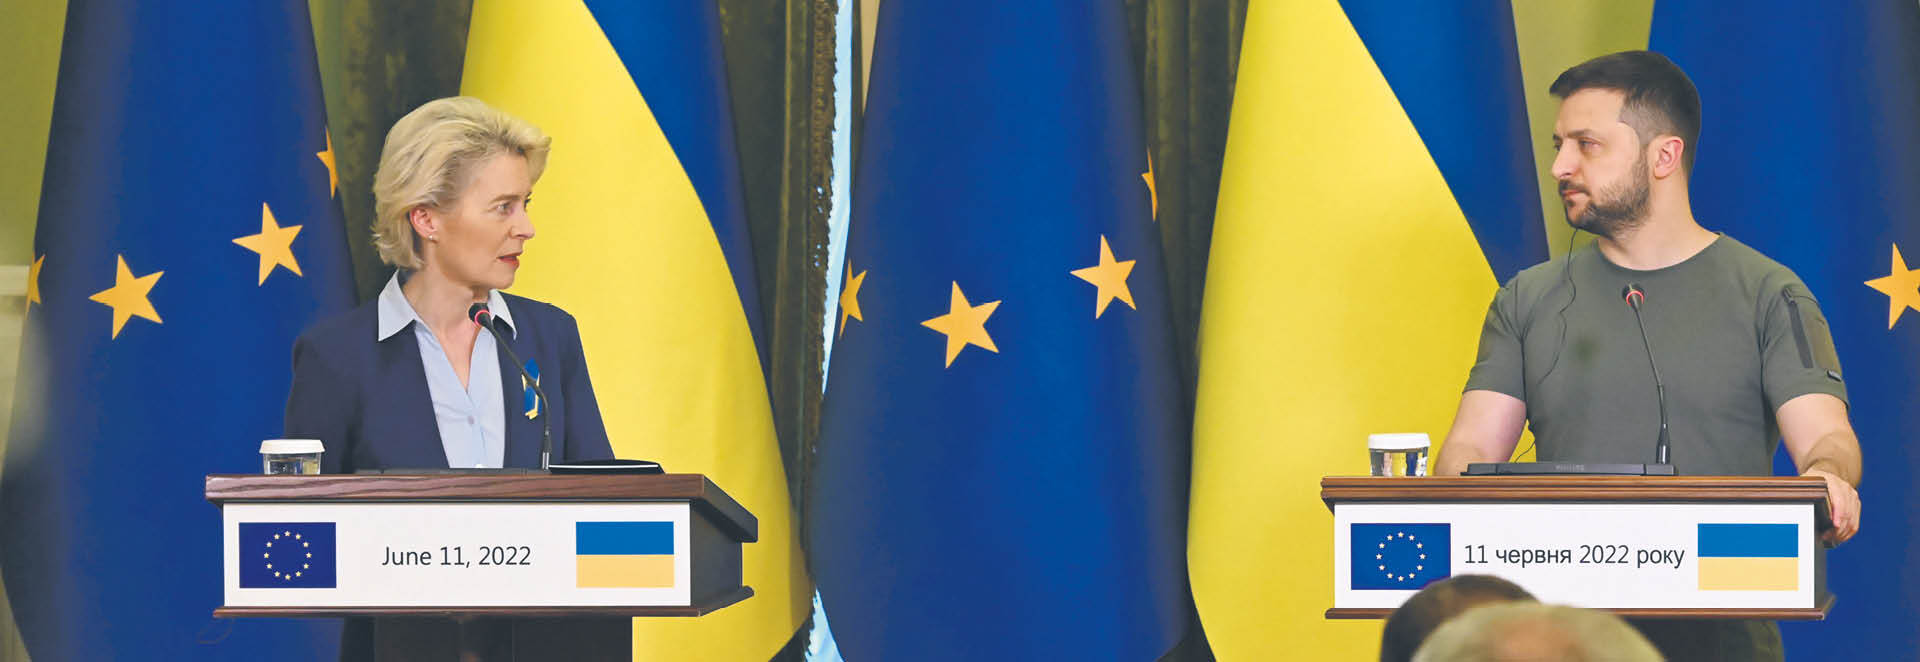 W połowie maja UE zatwierdziła wsparcie finansowe dla Ukrainy w wysokości 9 mld euro